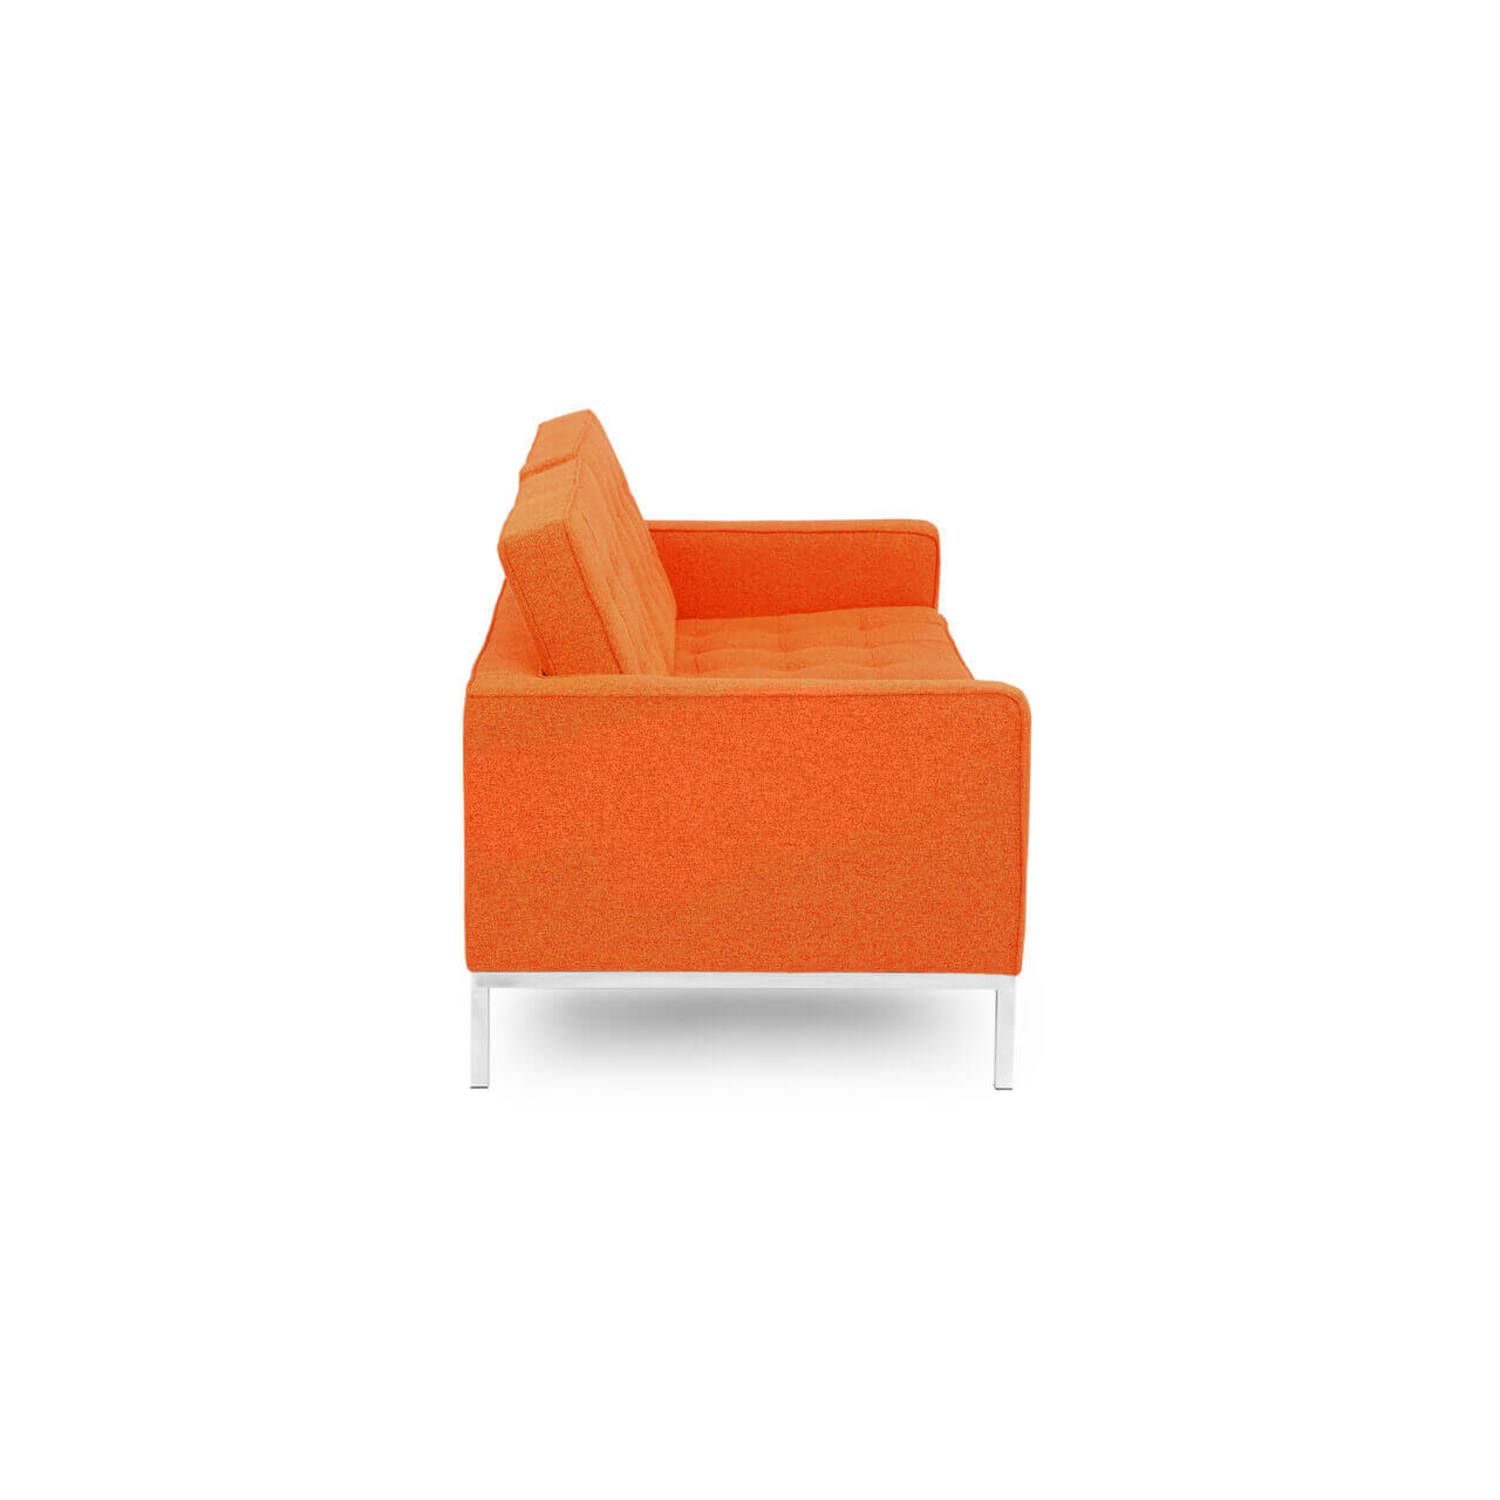 Оранжевый двухместный диван Florence